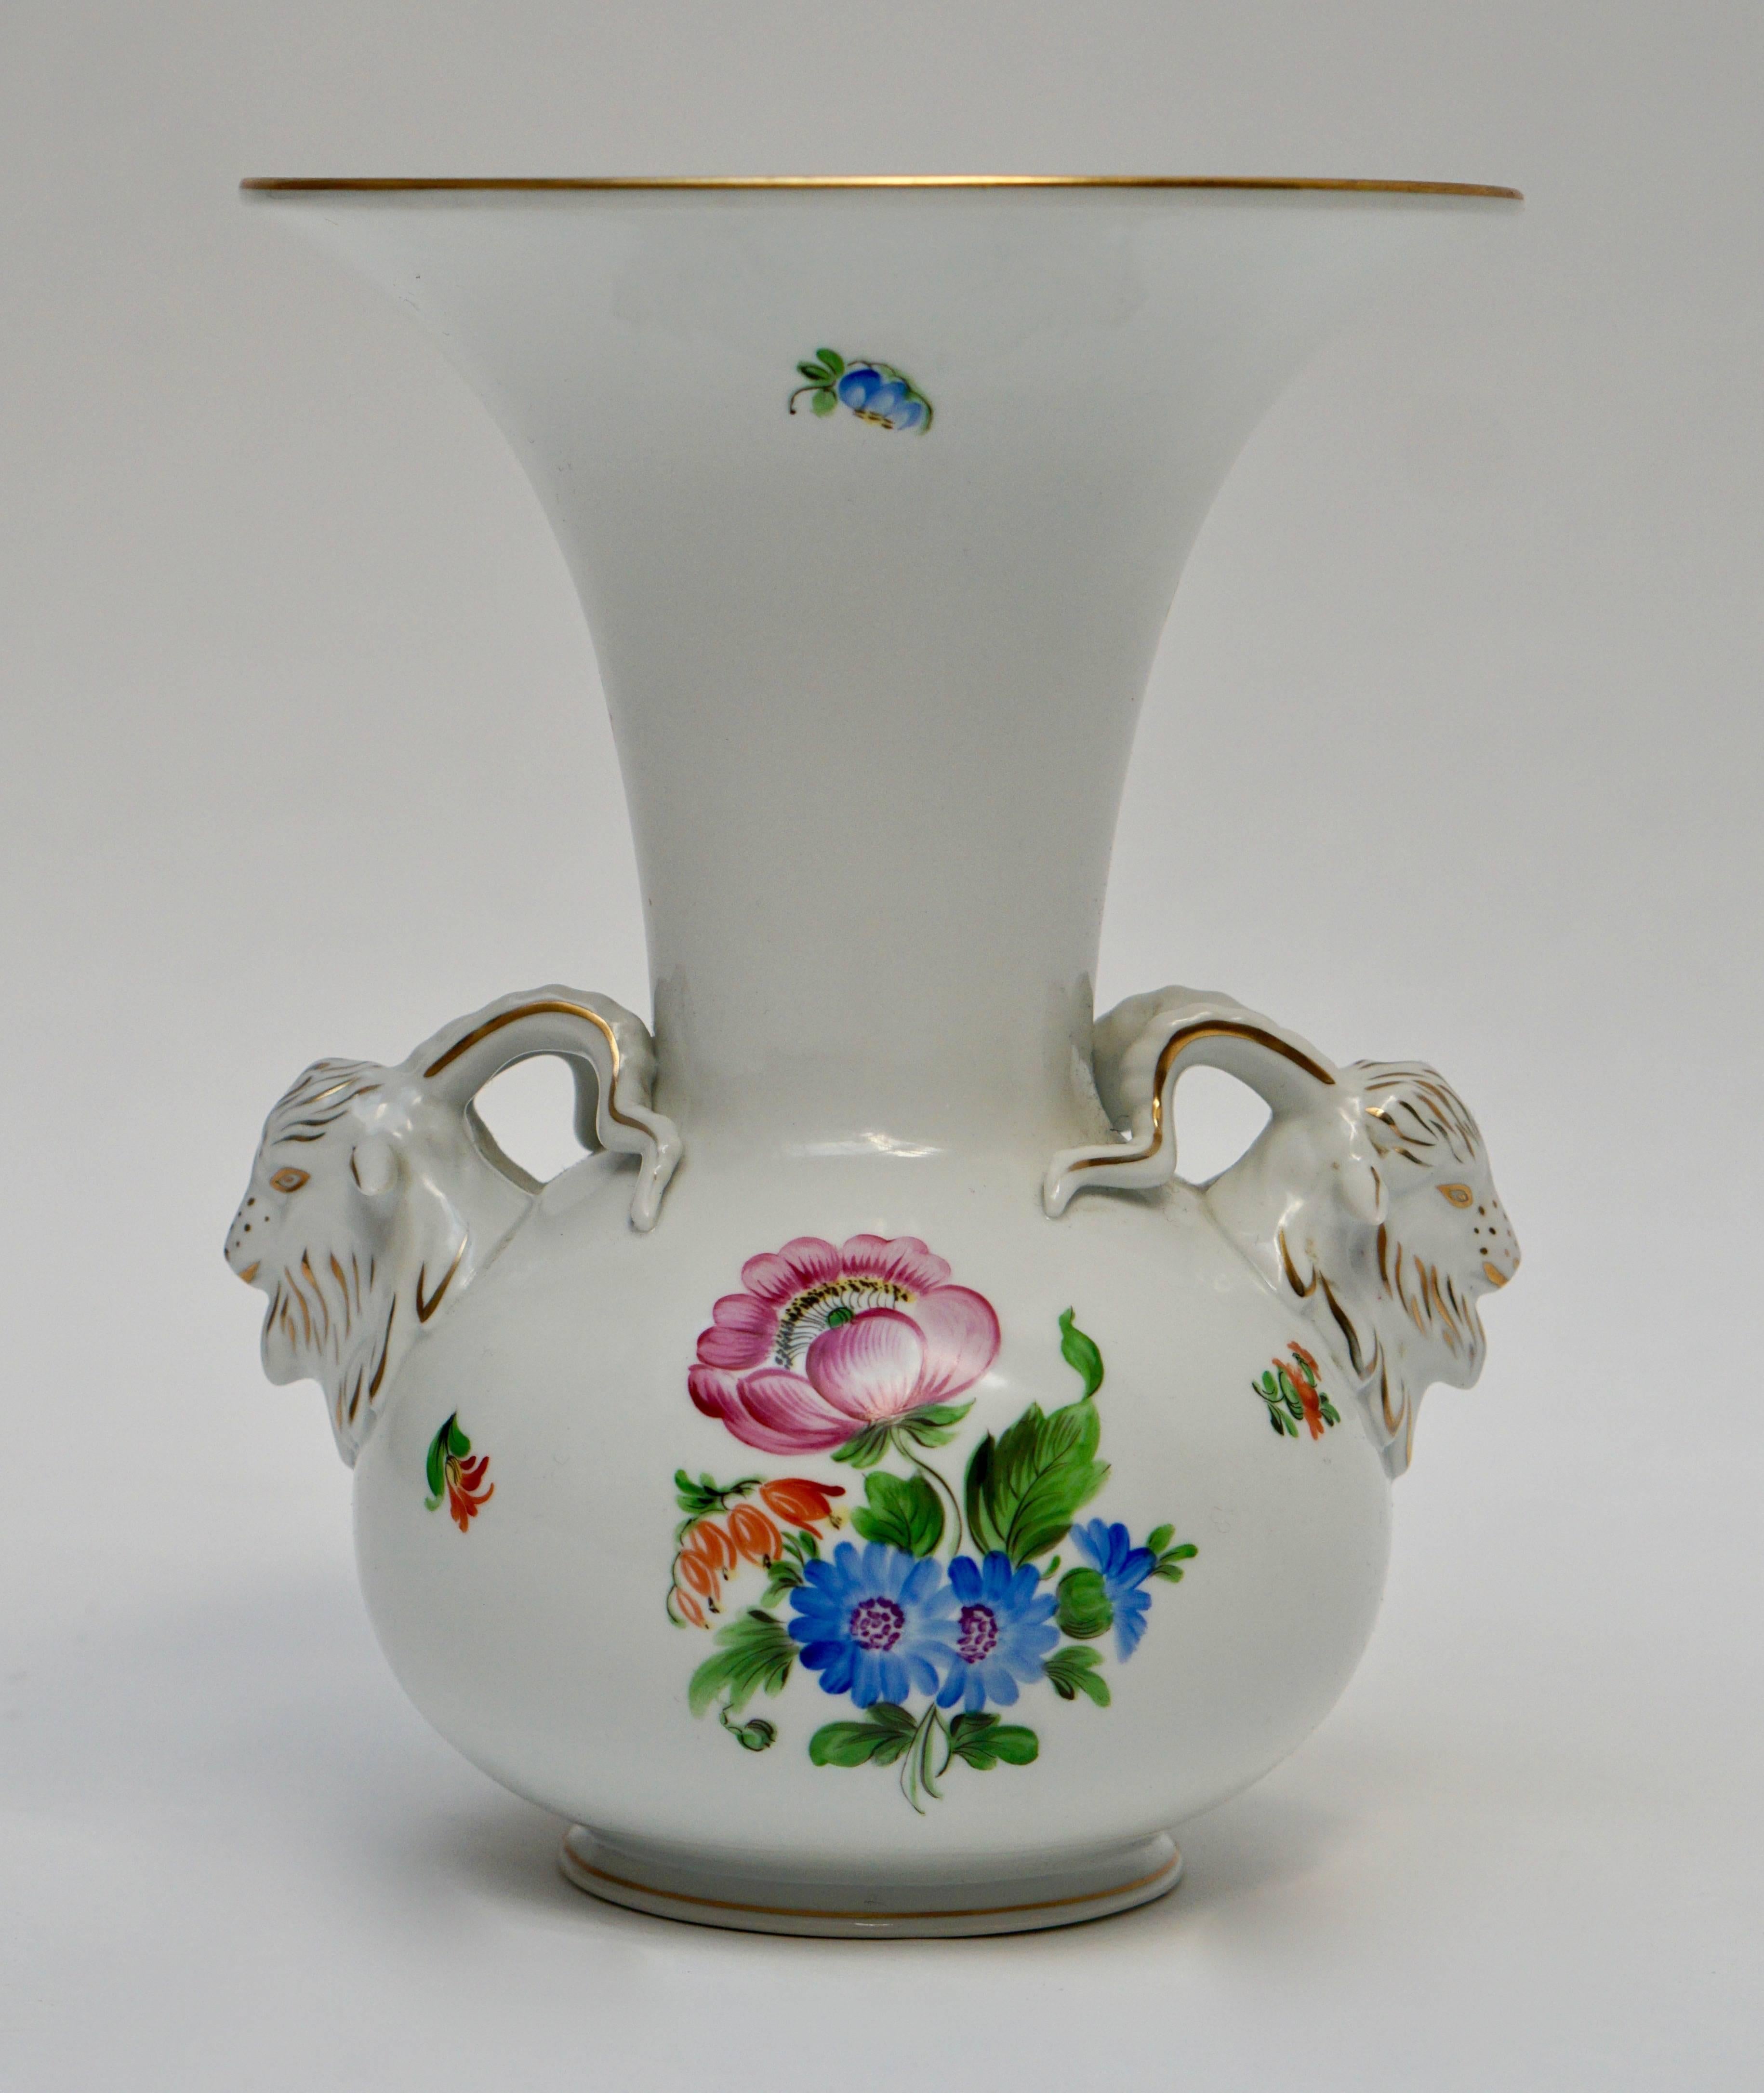 Herend,Rothschild birds, vase,porcelain,flower.
A porcelain Herend Rothschild Birds vase with two goat heads.

Marked on underside.
Measure: Height 25 cm.
Diameter 15 cm.